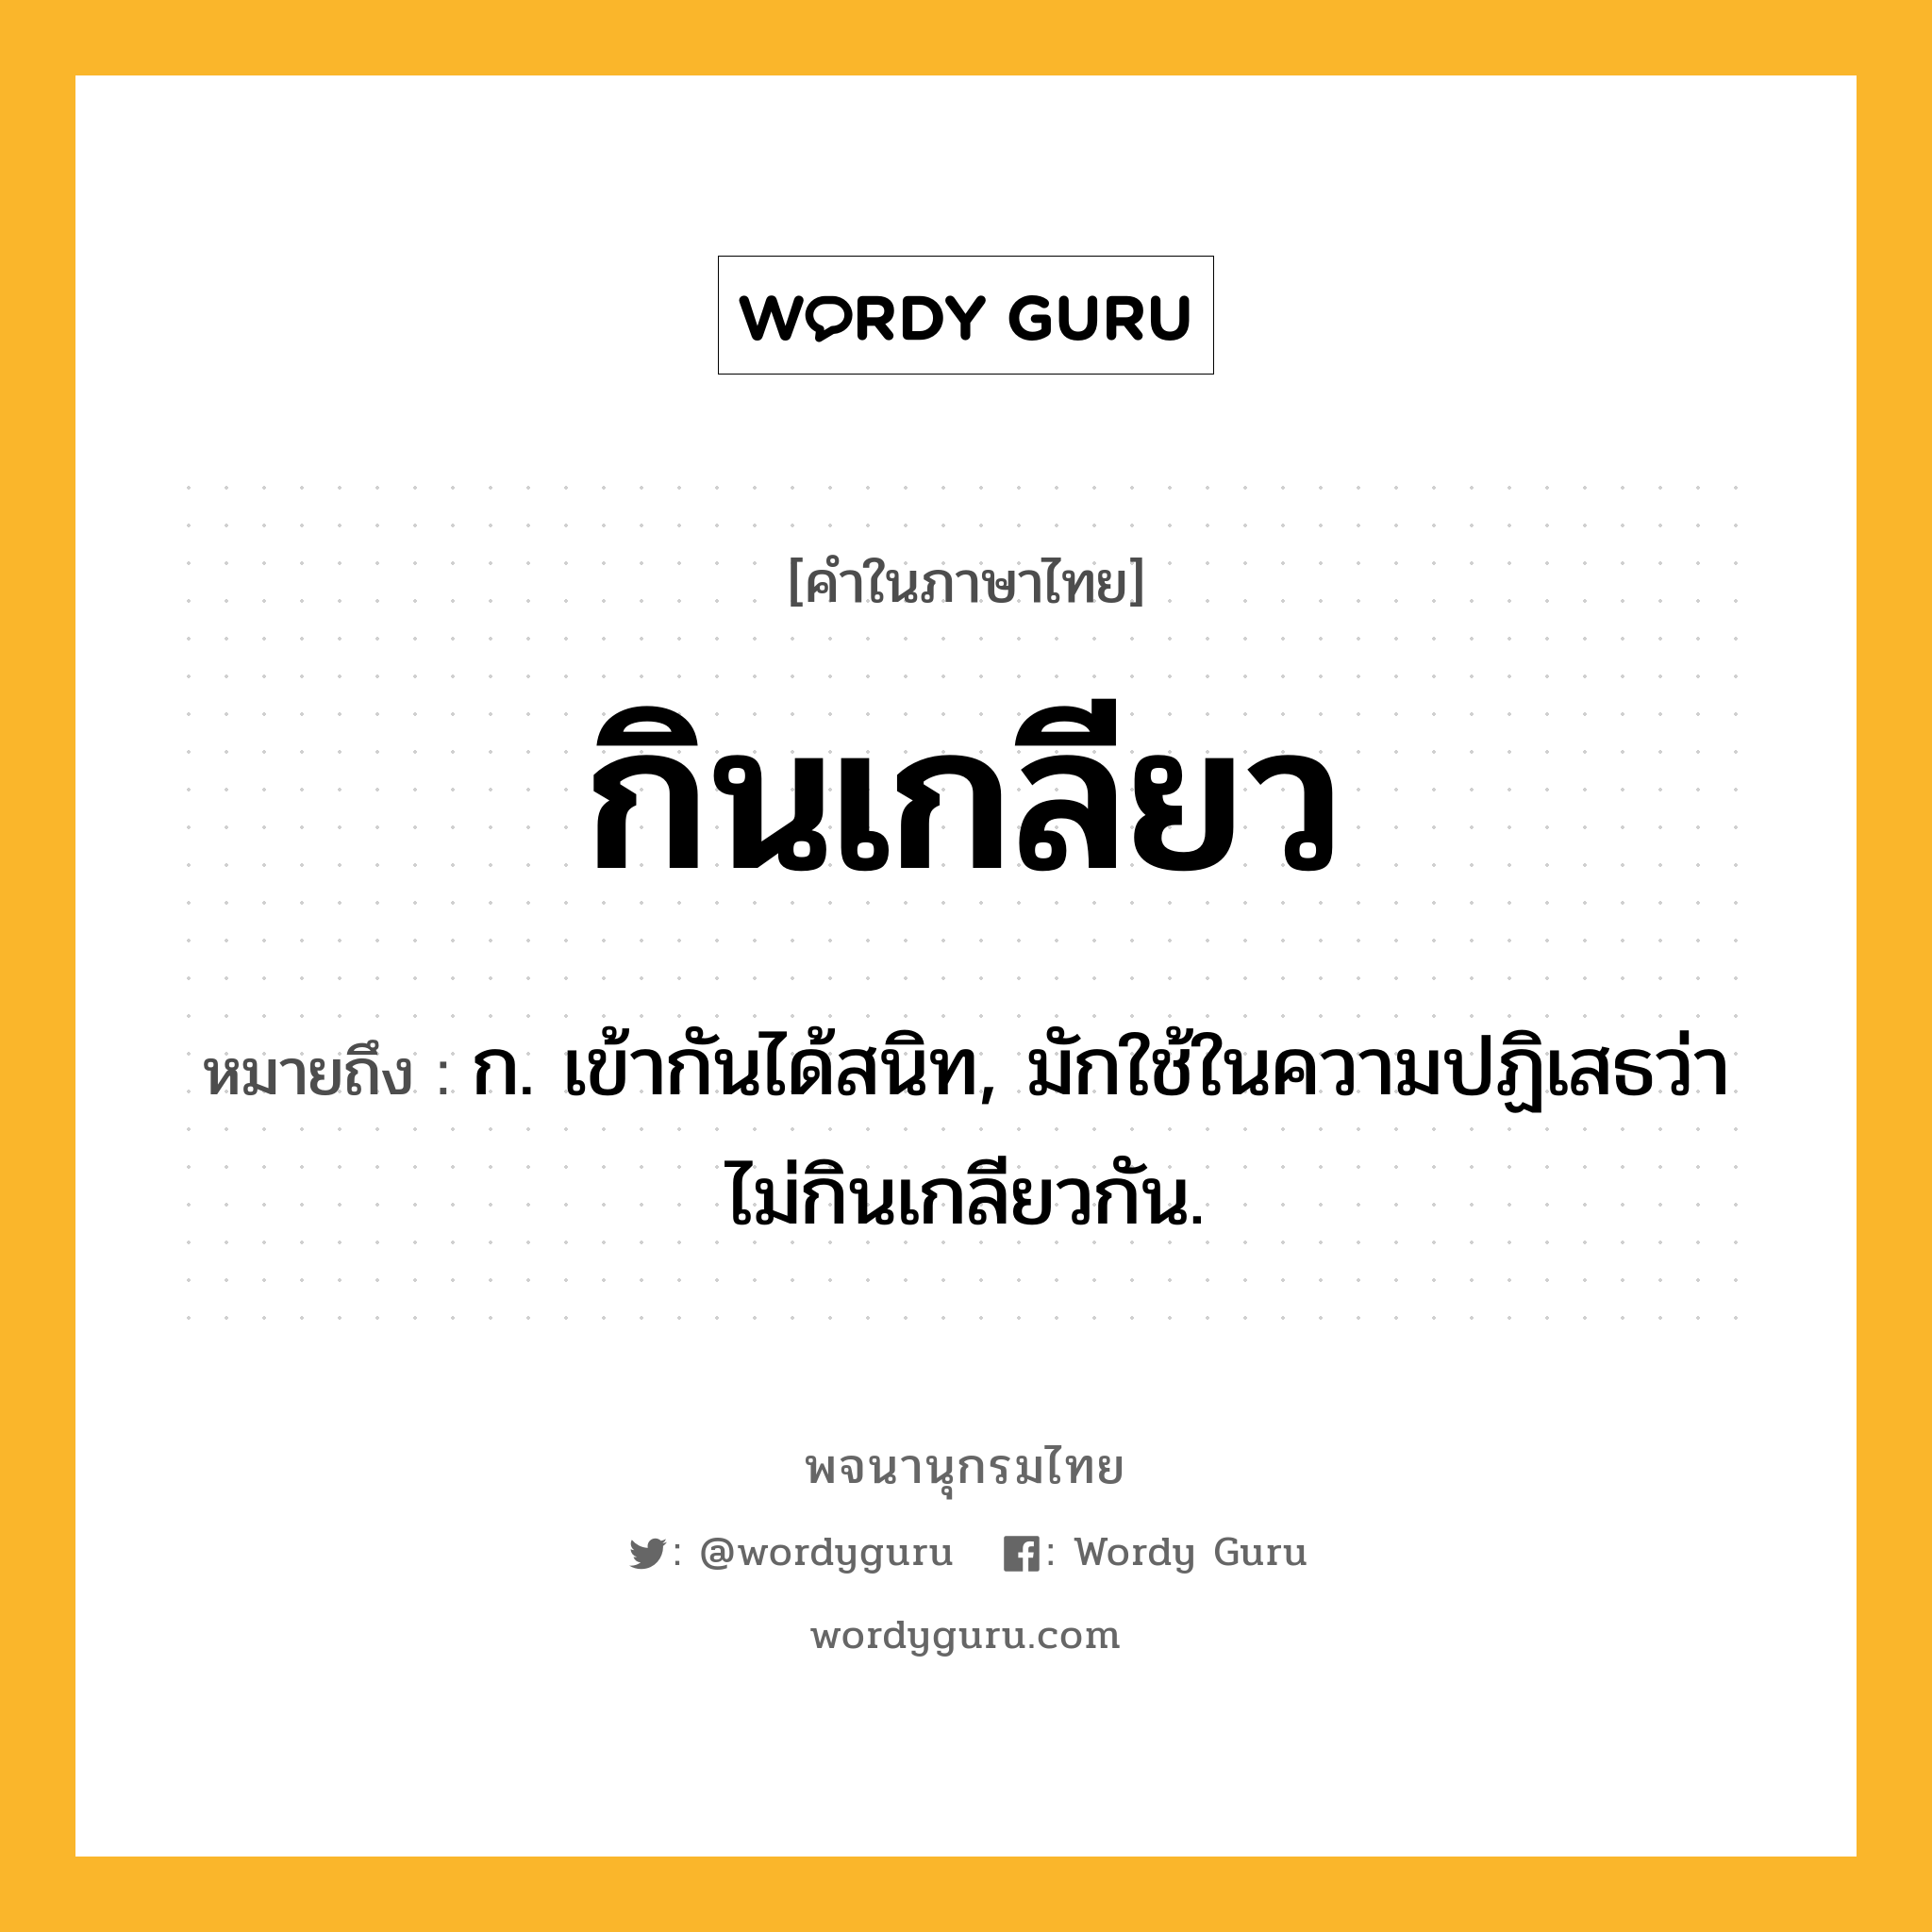 กินเกลียว หมายถึงอะไร?, คำในภาษาไทย กินเกลียว หมายถึง ก. เข้ากันได้สนิท, มักใช้ในความปฏิเสธว่า ไม่กินเกลียวกัน.